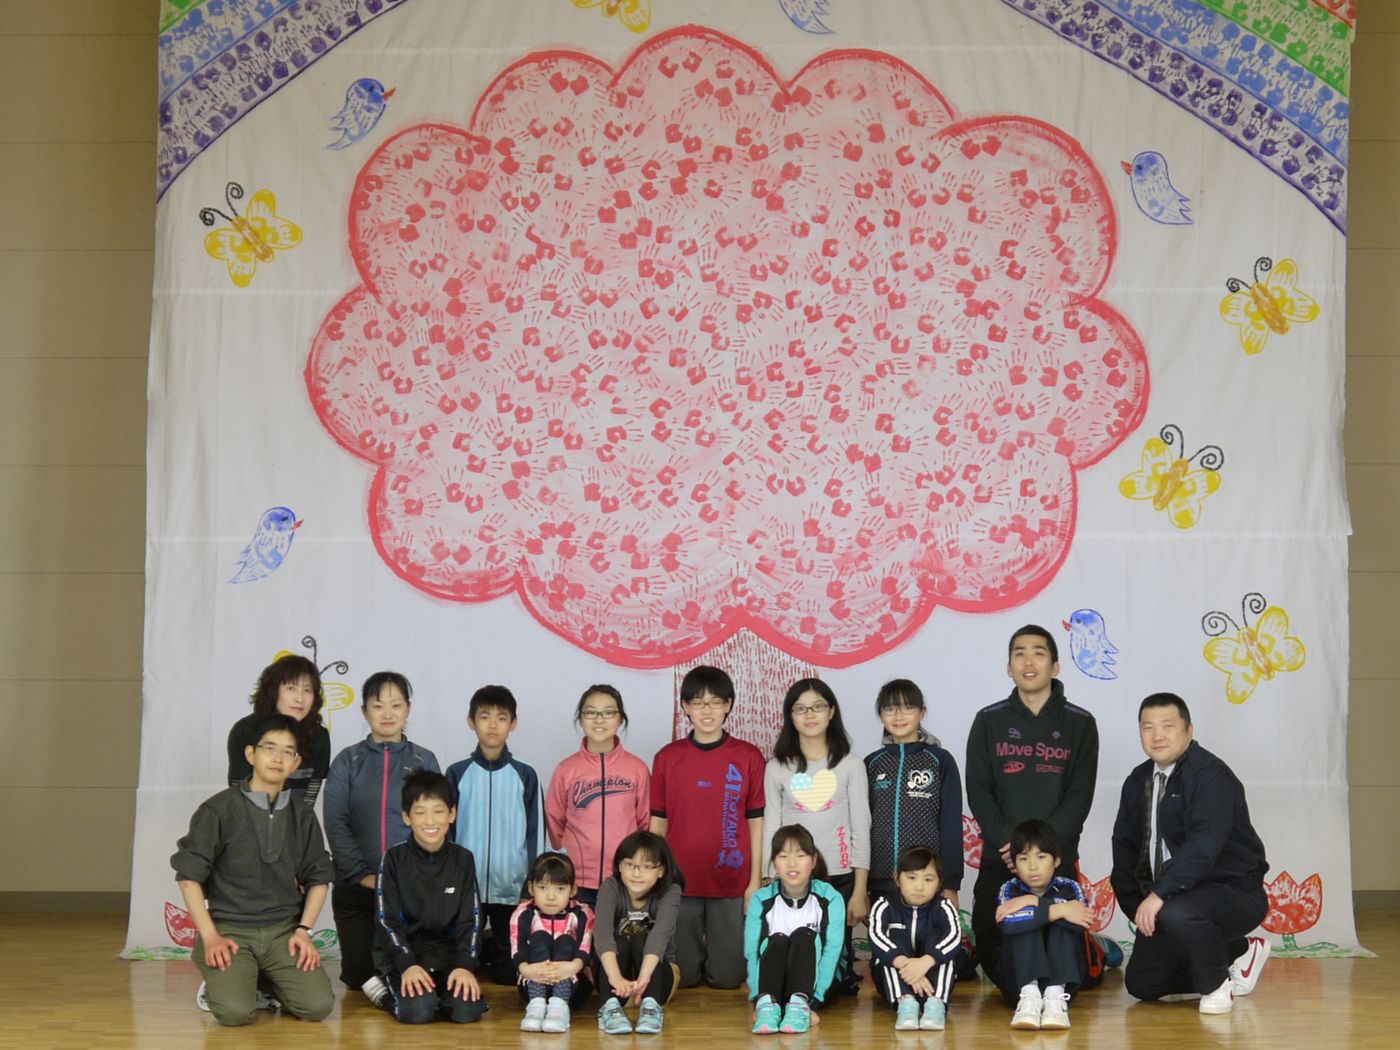 2017年2月14日に北海道有珠郡壮瞥町の久保内小学校11名の全校生徒で作製した「世界一大きな絵2020壮瞥町」の写真と絵を送って頂きました。